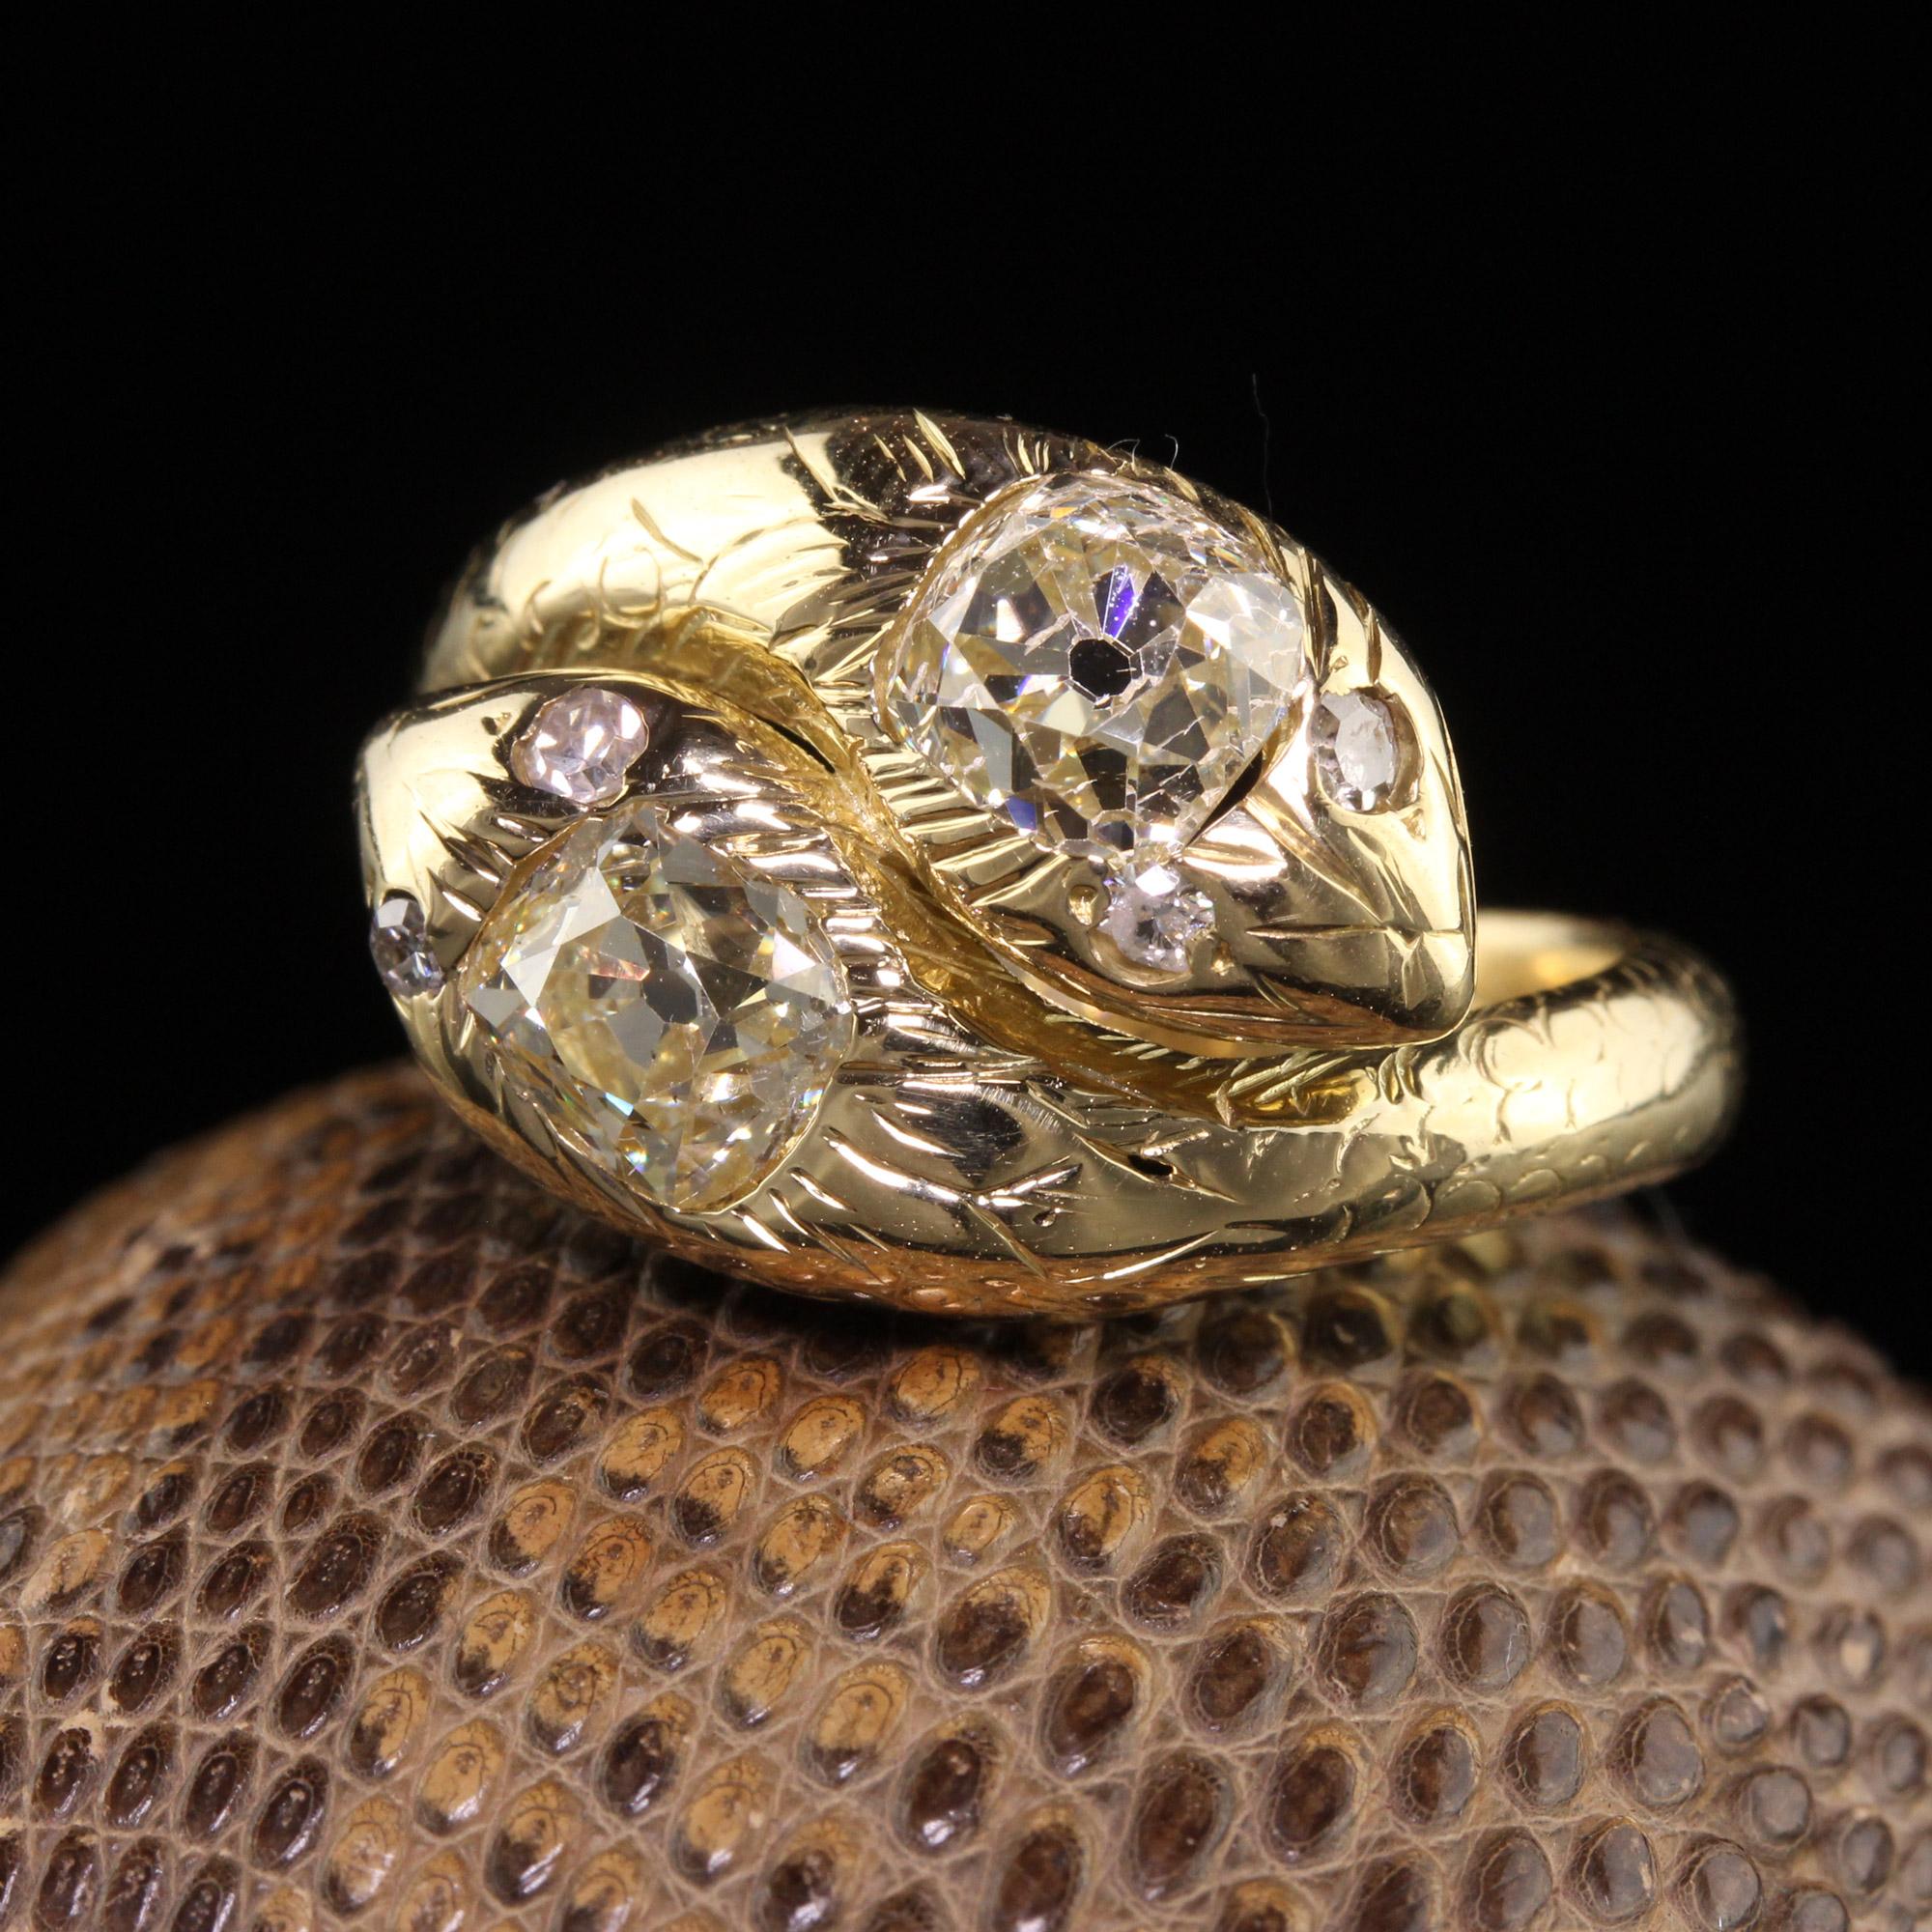 Schöne antike viktorianische 18K Gelbgold Old Mine Cut Diamond Double Snake Ring. Dieser wunderschöne Ring ist aus 18k Gelbgold gefertigt. Die Schlangenköpfe sind mit zwei großen, klobigen Diamanten im Altminenschliff versehen, während die Augen mit